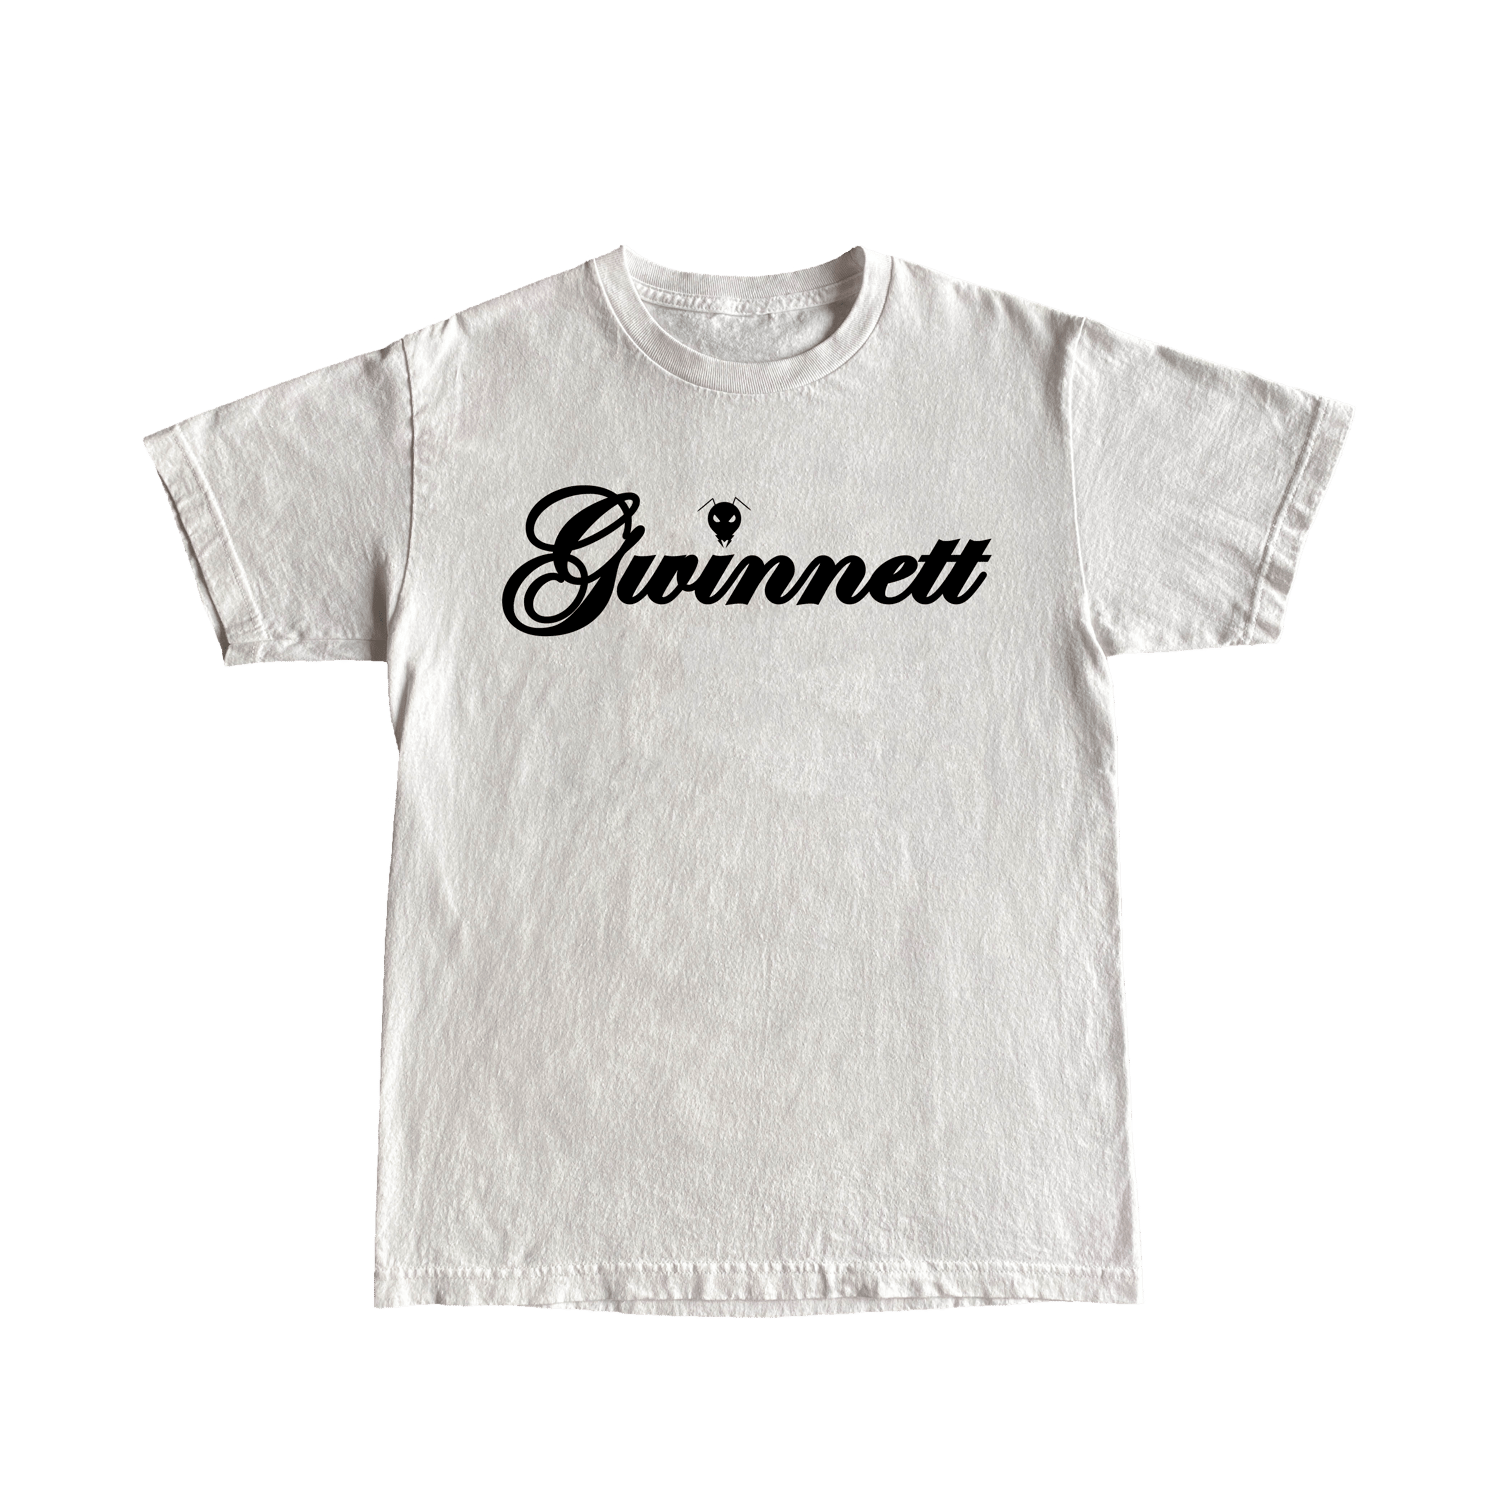 Gwinnett Shirt